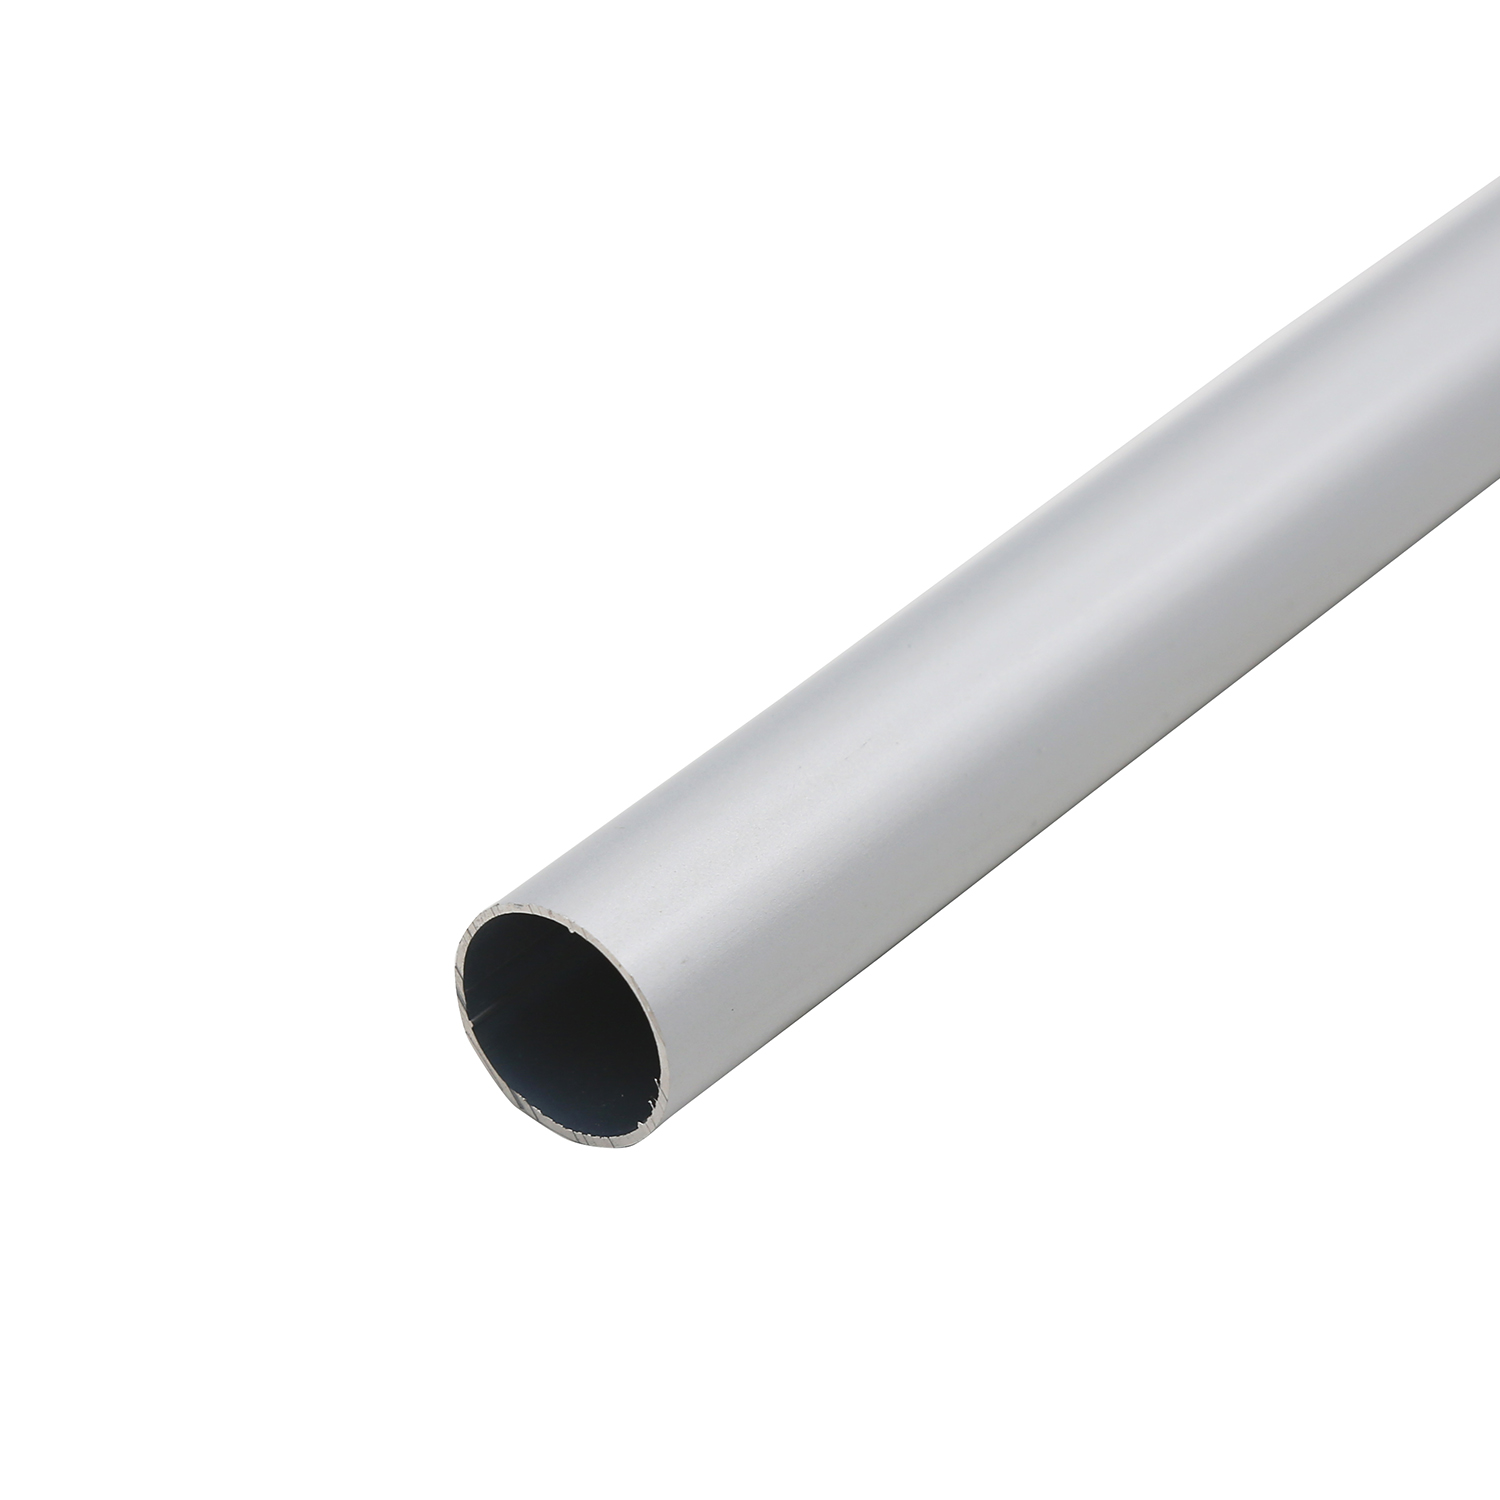 Perfil de extrusión de aluminio para tubo industrial.